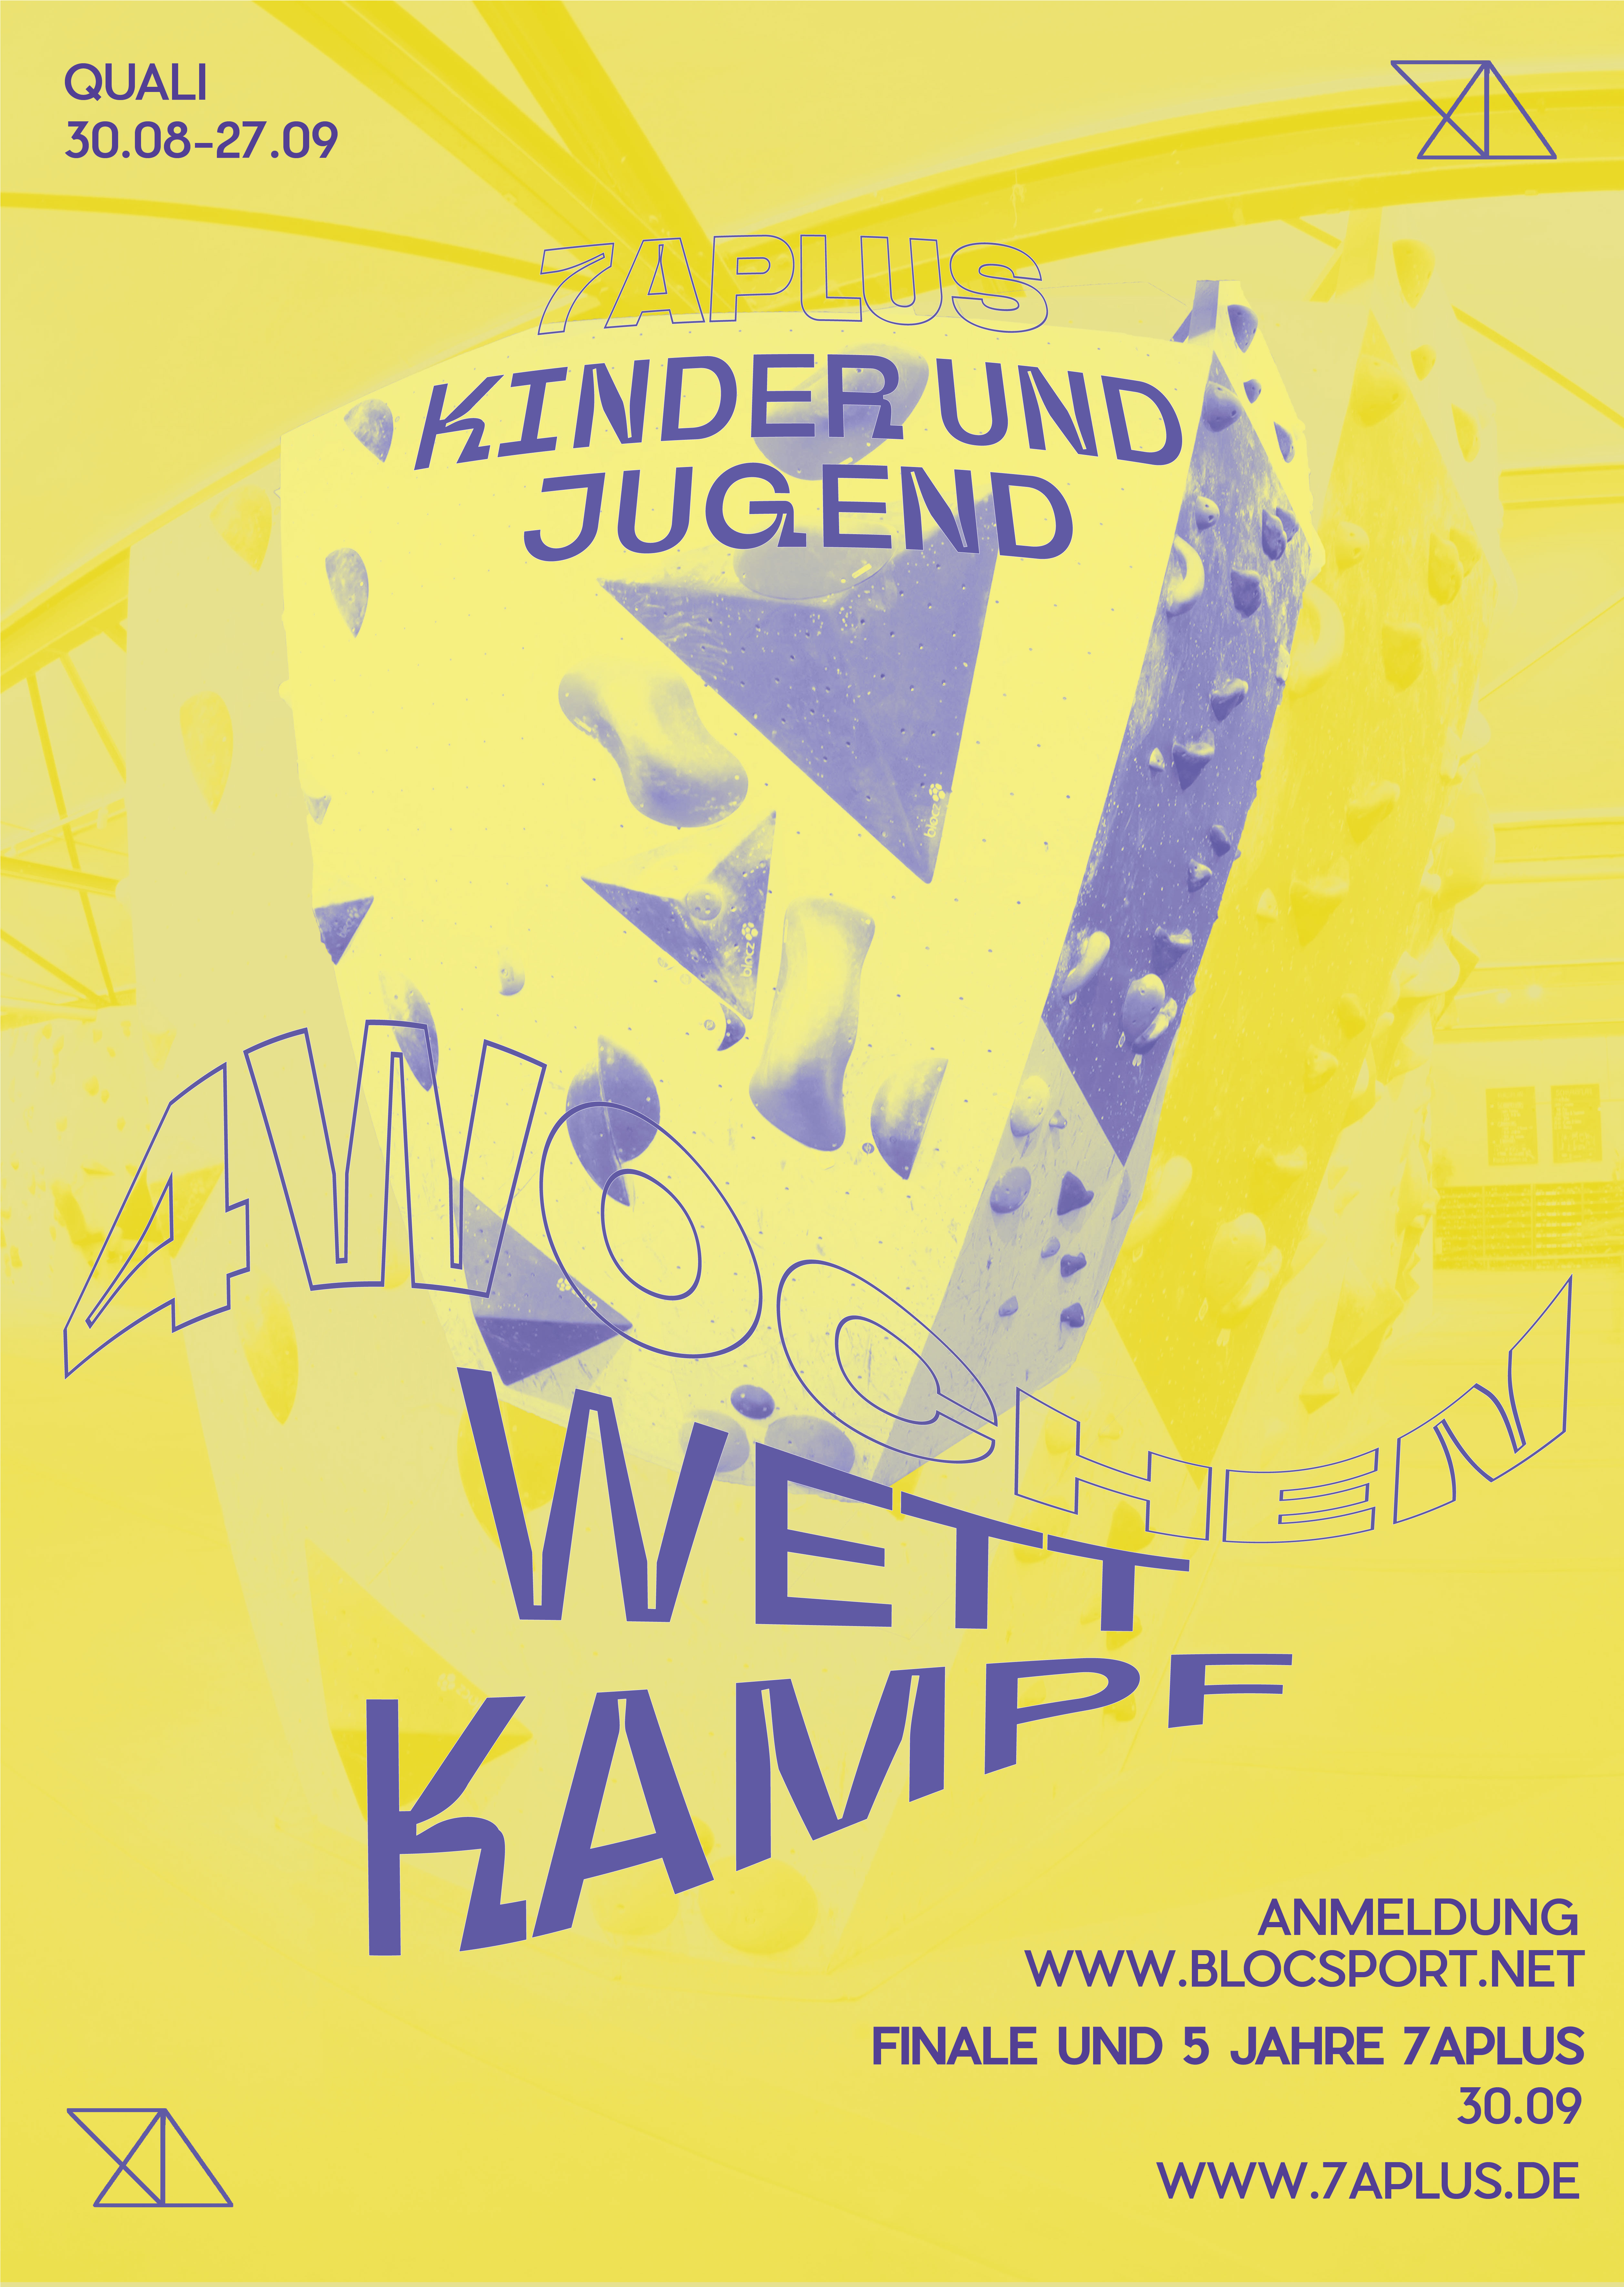 Poster for Kinder-&Jugend-Monatswettkampf